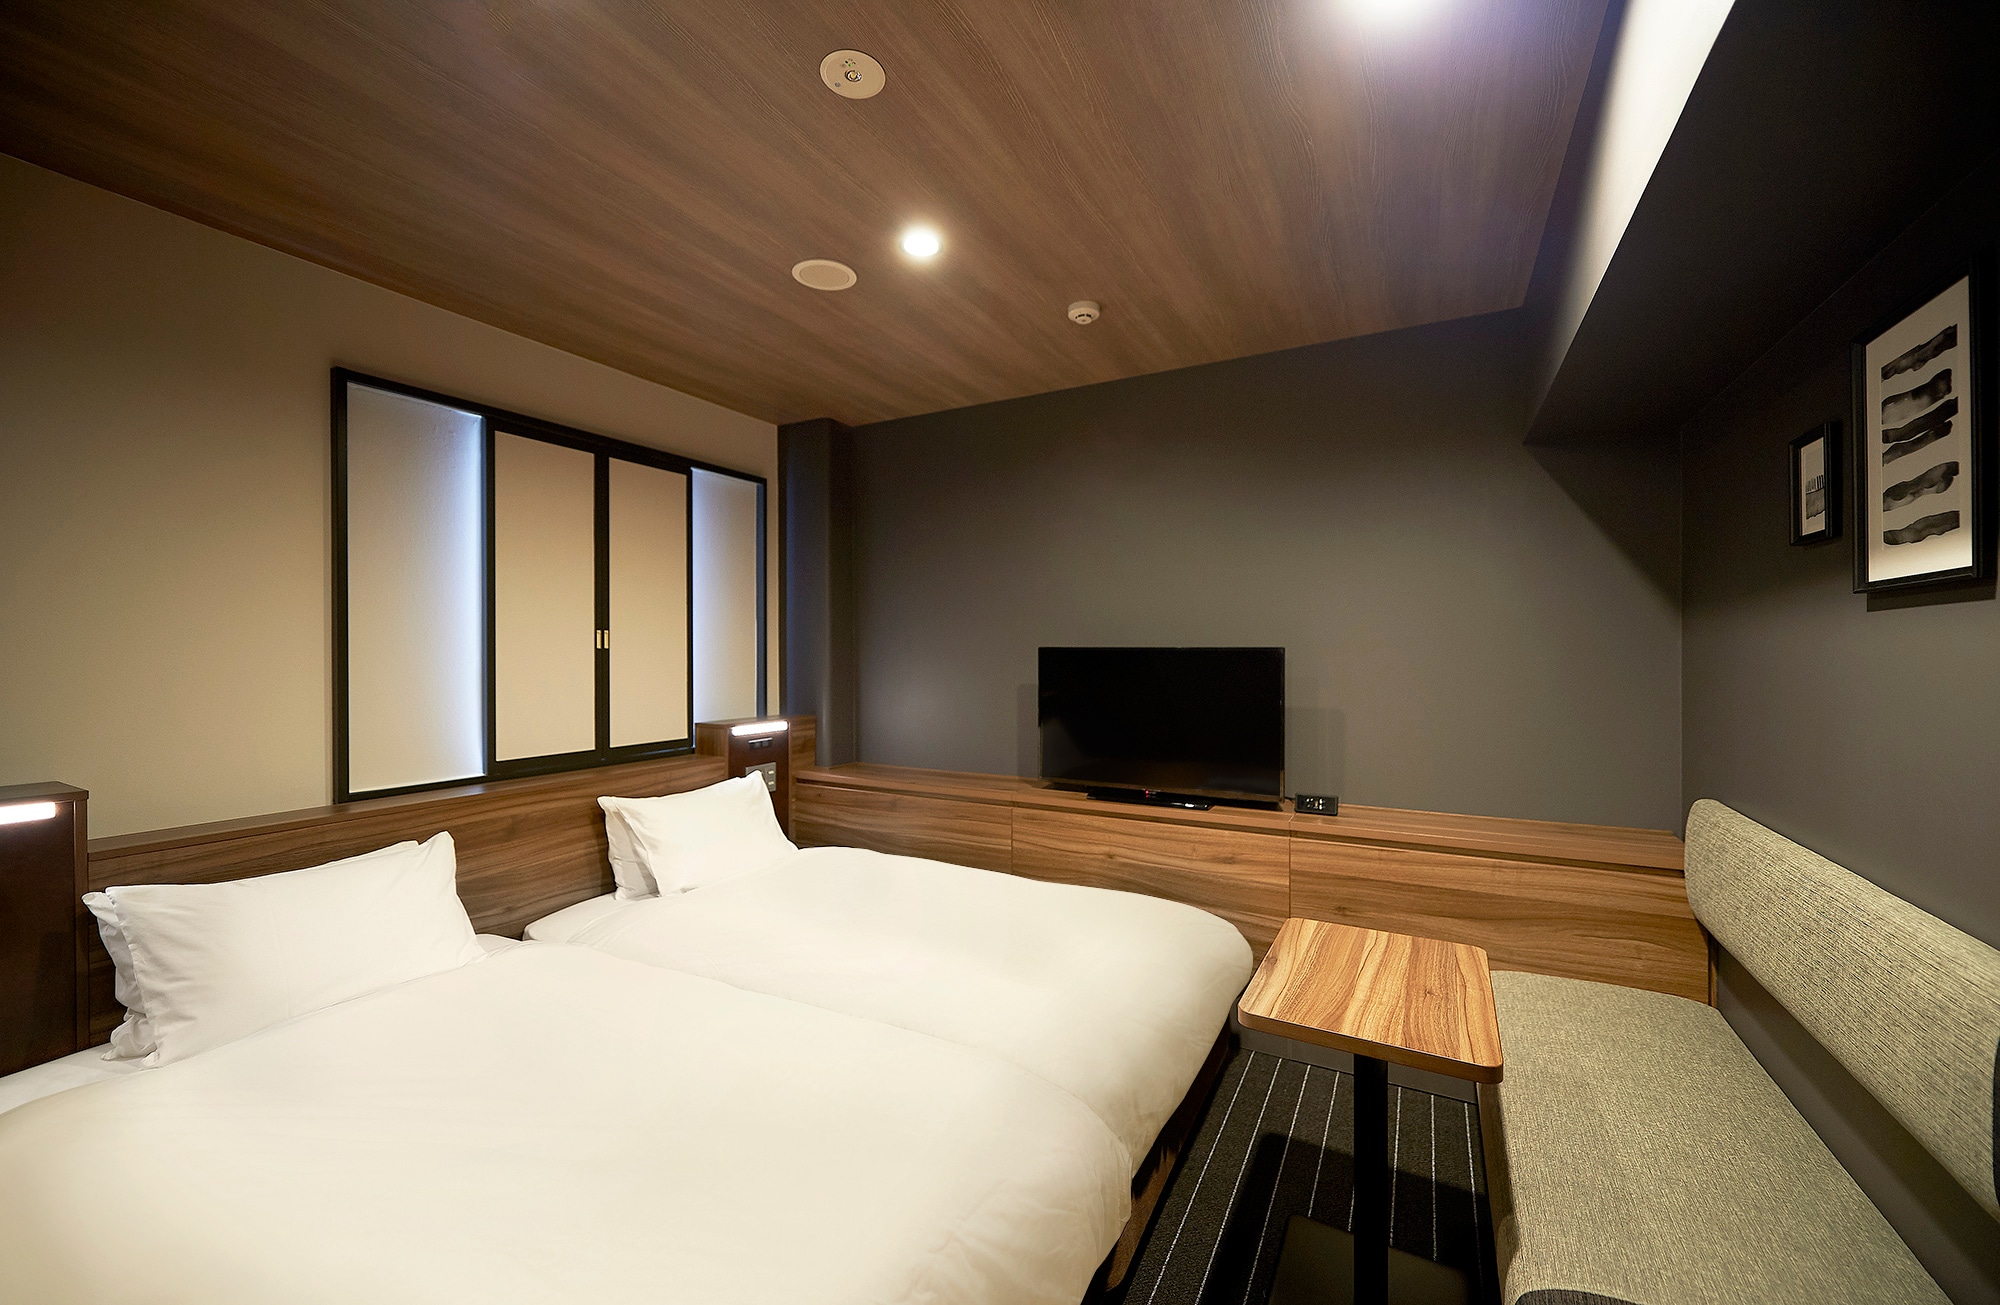 [Guest room] Twin room, 17.4㎡, bed width 100cm x 2